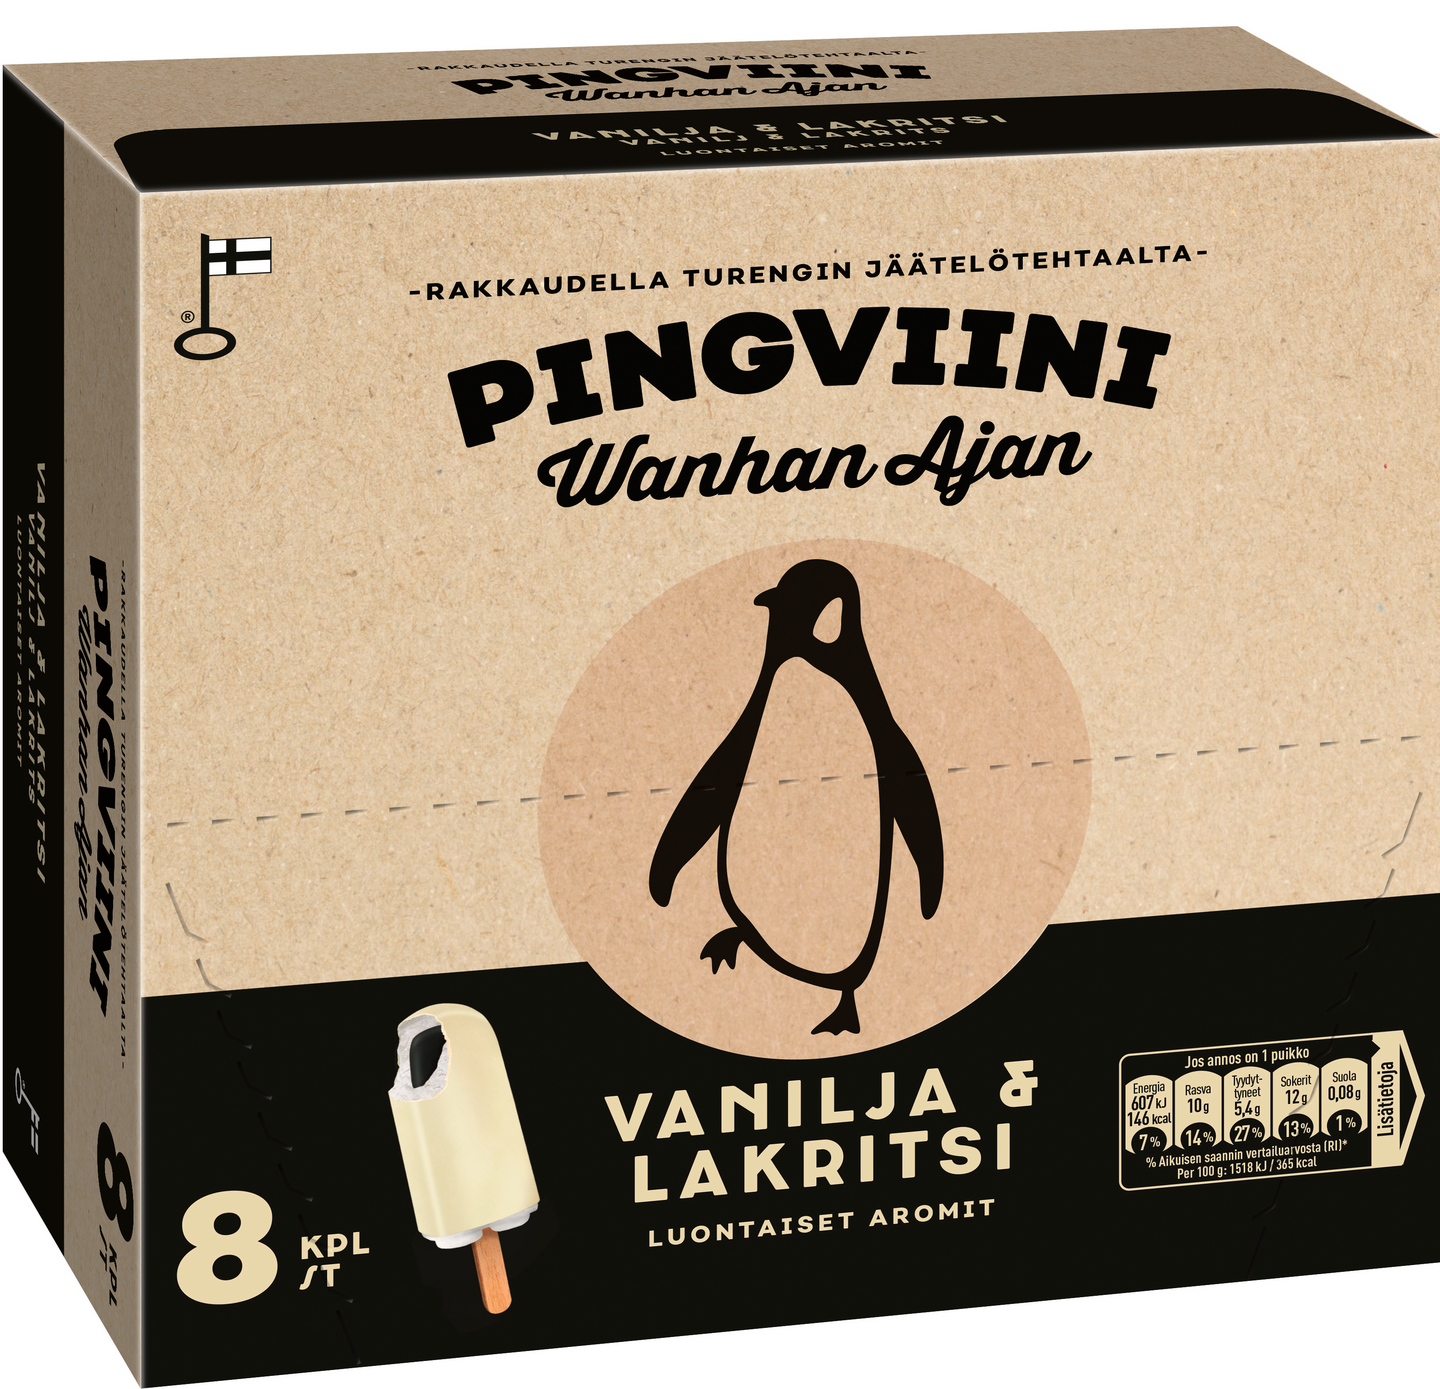 Pingviini Wanhan Ajan Vanilja & Lakritsi kermajäätelöpuikko monipakkaus 8x40g